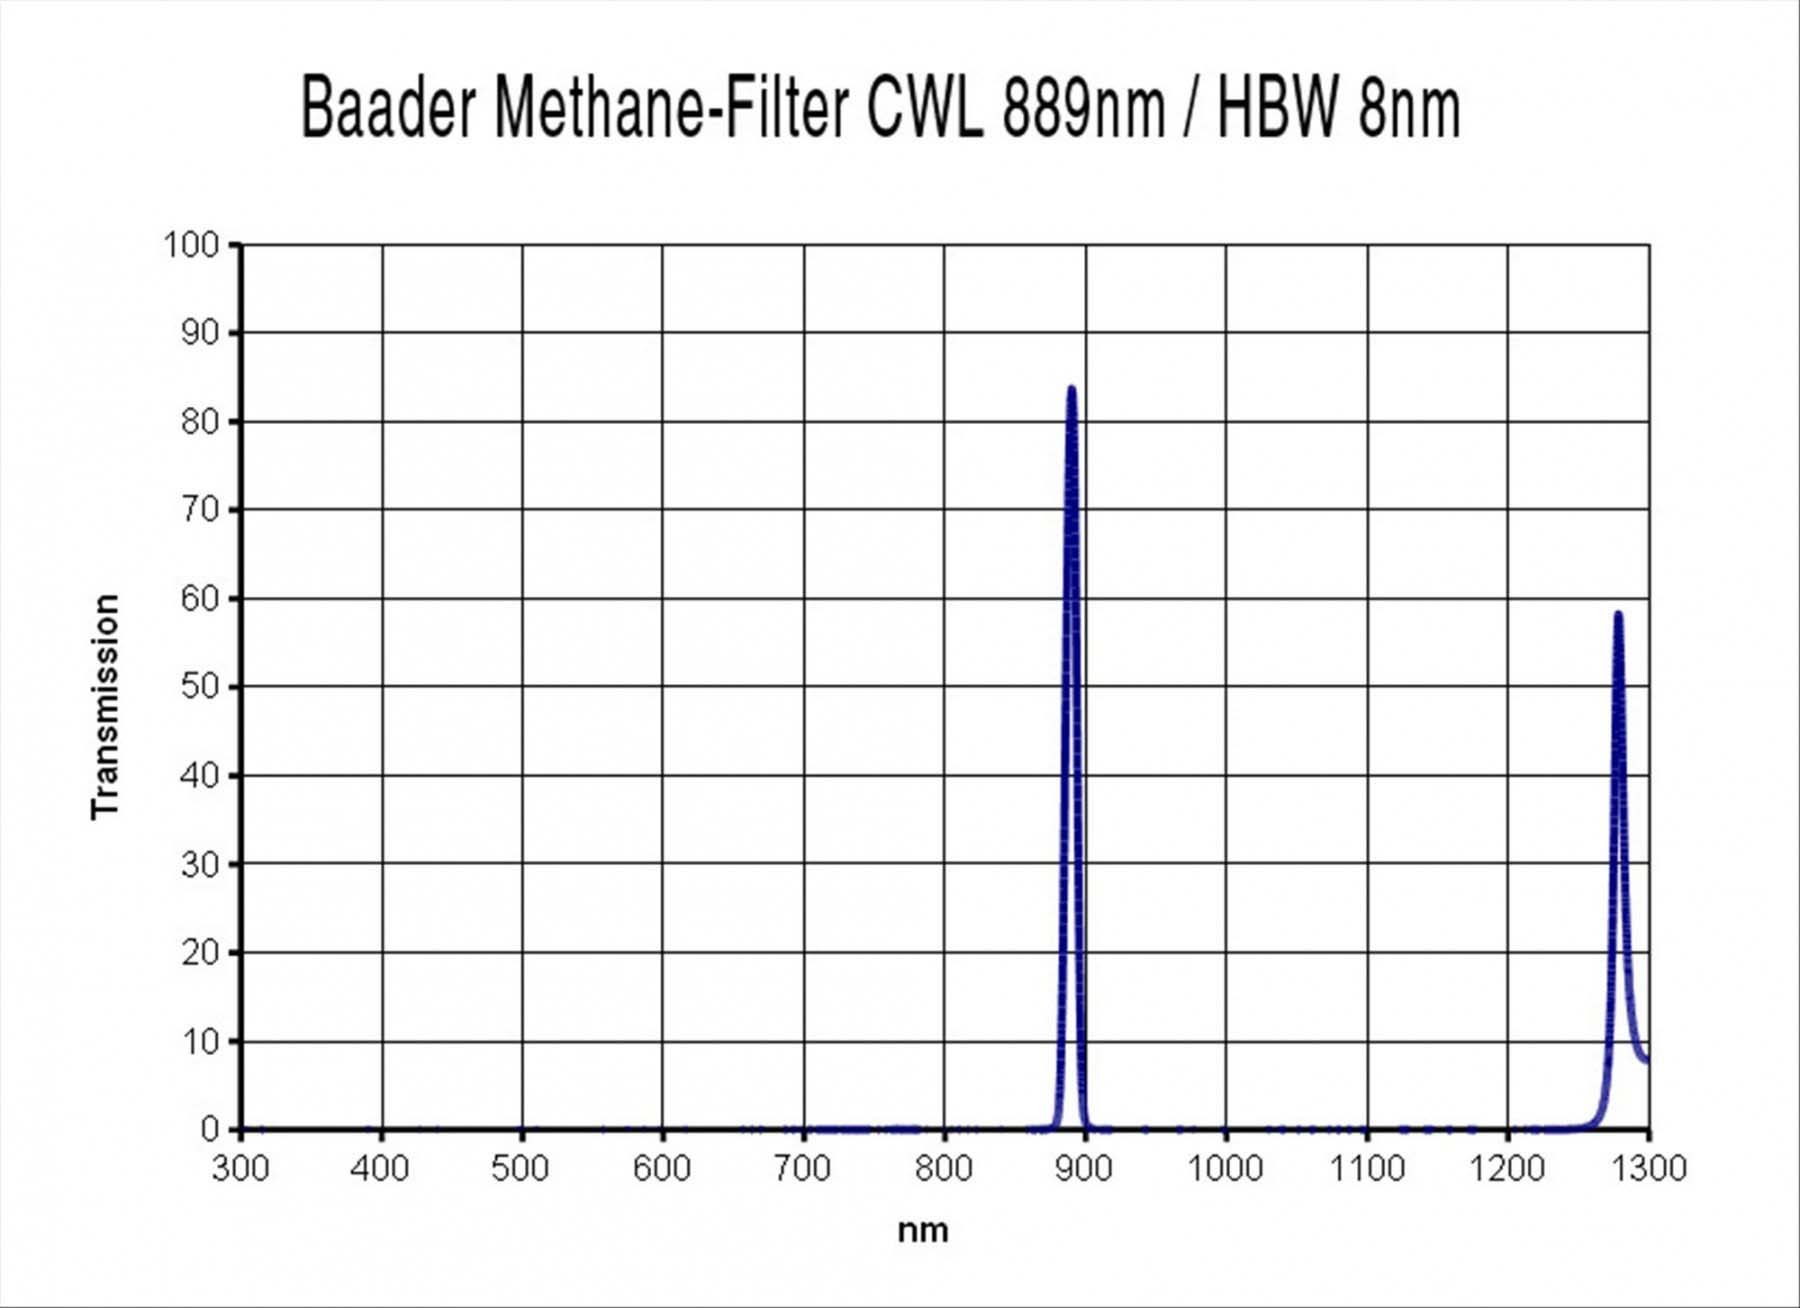 Baader 1.25" Methane Filter (CWL 889nm, 8nm) Transmission